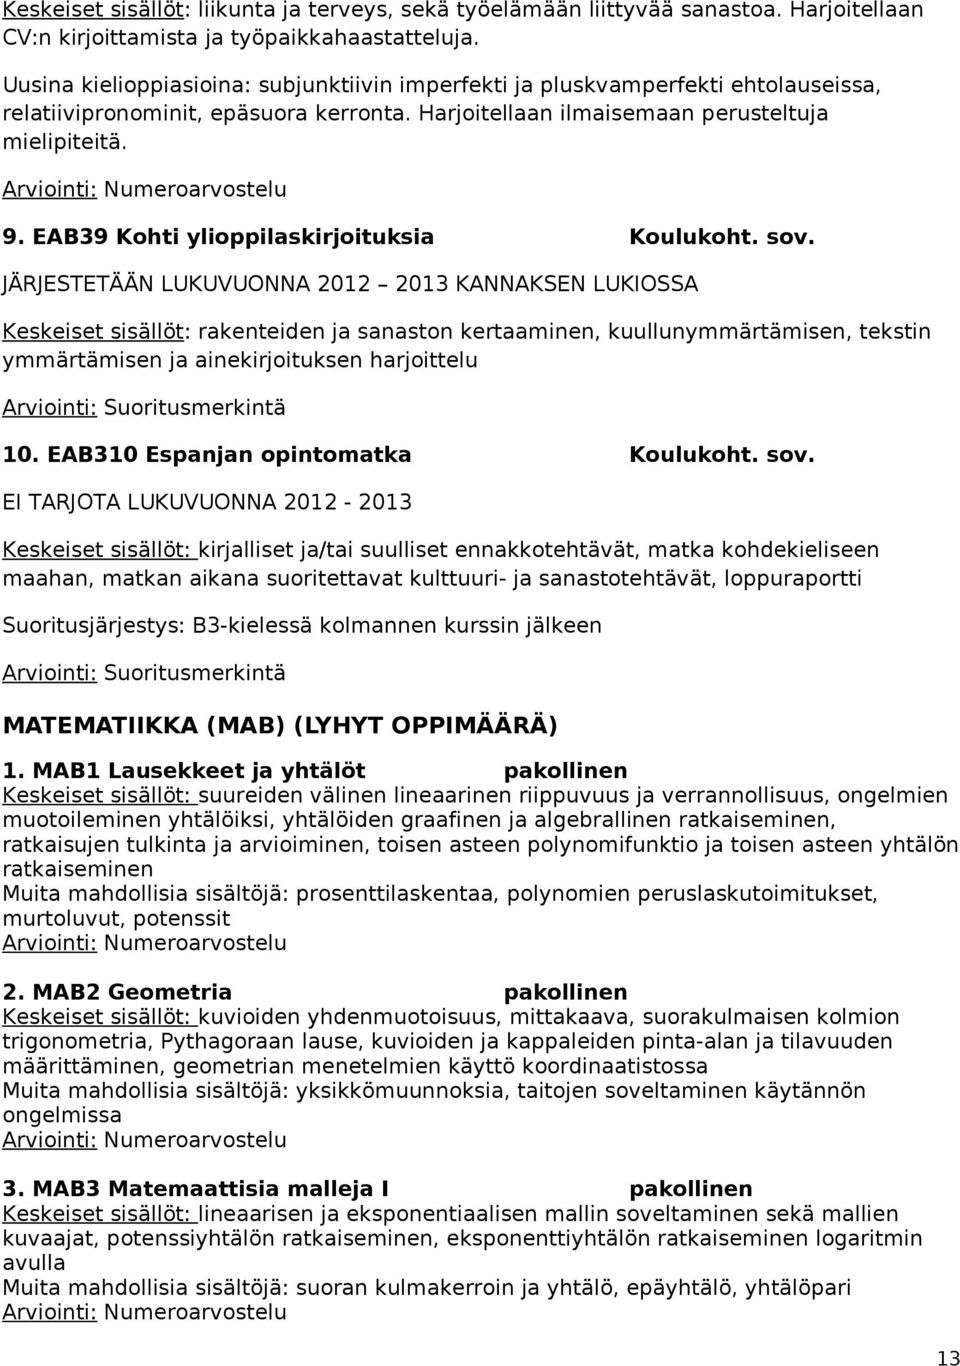 EAB39 Kohti ylioppilaskirjoituksia Koulukoht. sov.